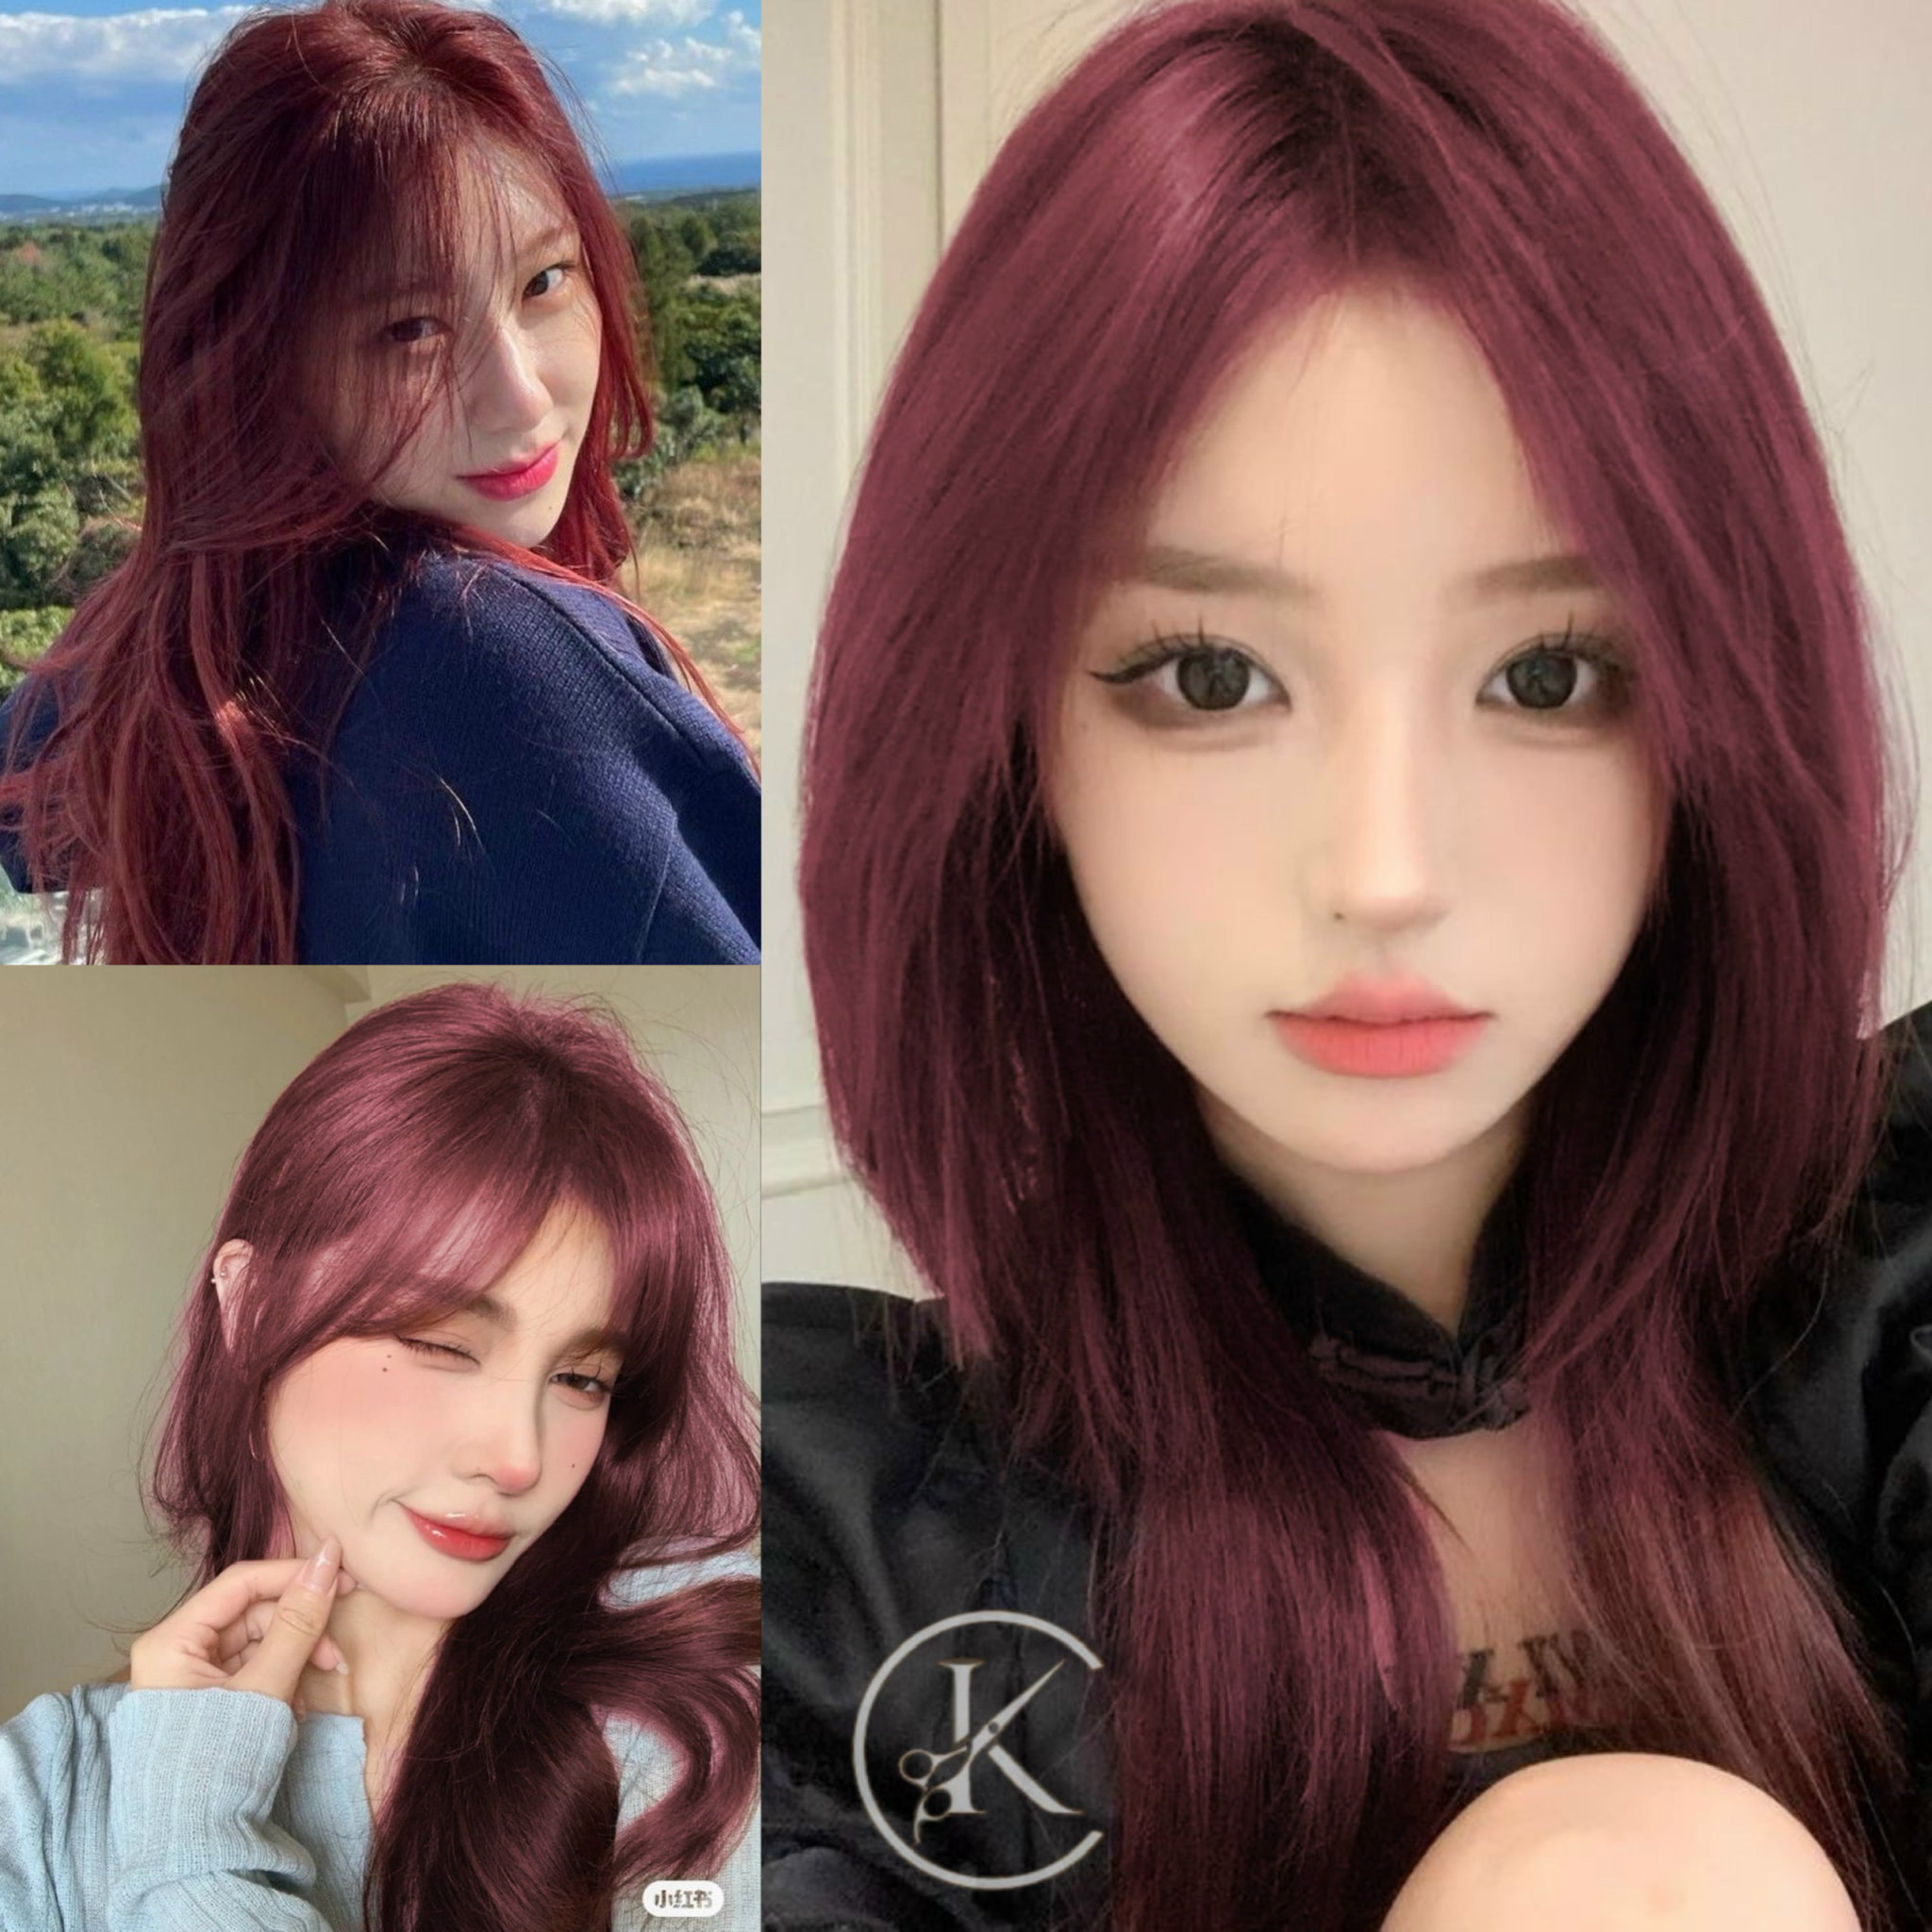 Nhuộm tóc màu nâu đỏ cherry là cách tuyệt vời để thể hiện phong cách riêng của mình. Hãy để tóc của bạn trở nên đầy sức hút và thu hút sự chú ý từ mọi người xung quanh.